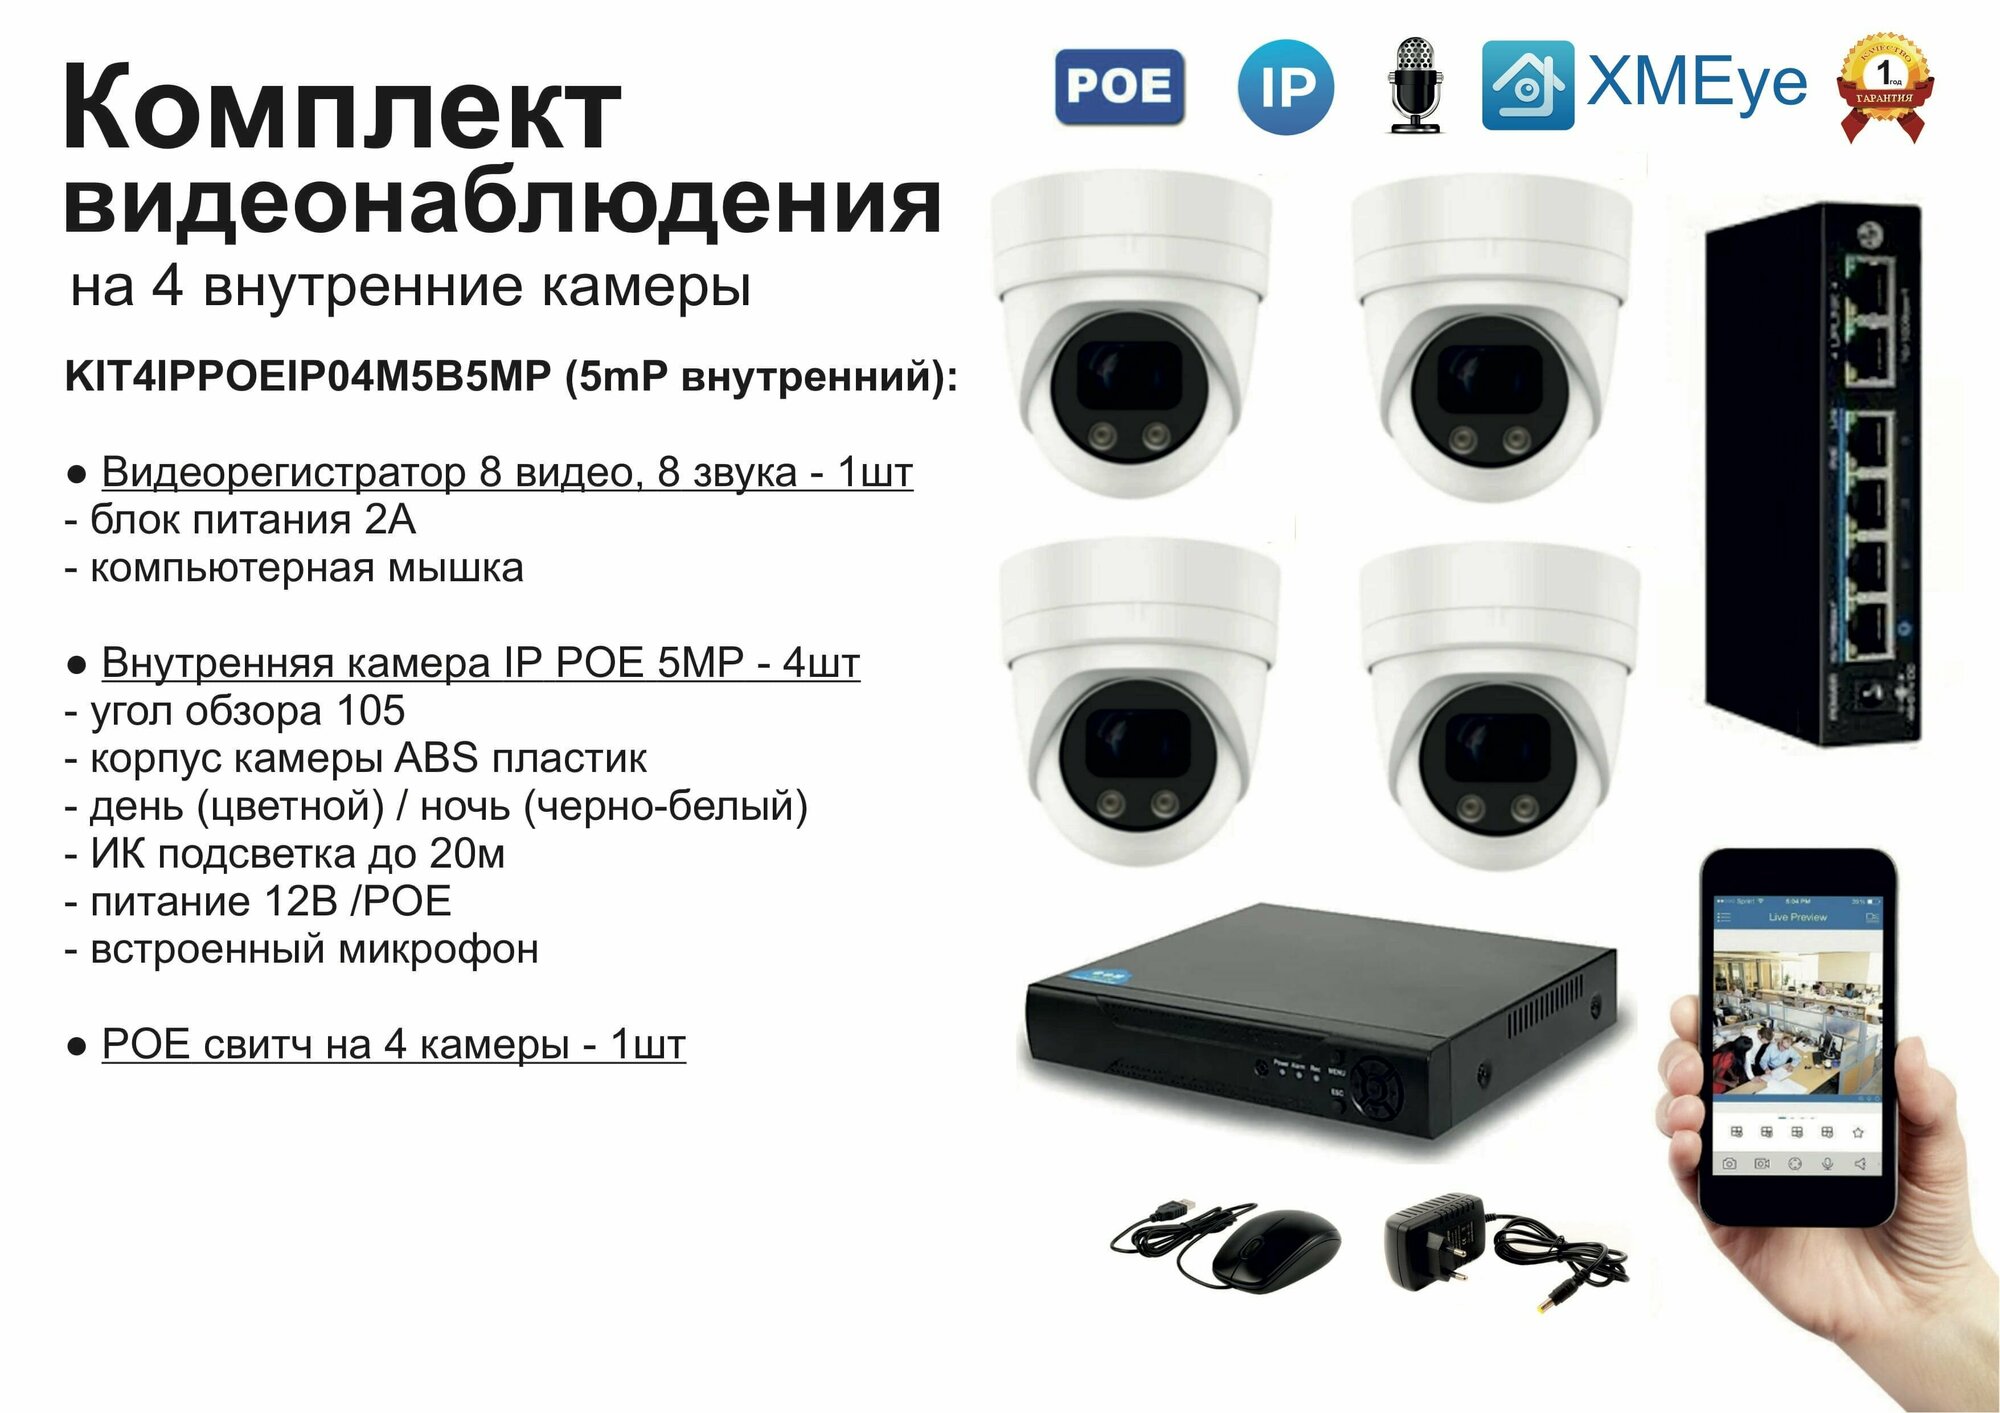 KIT4IPPOEIP04M5B5MP. Комплект видеонаблюдения IP POE на 4 камеры. Внутренний, 5мП